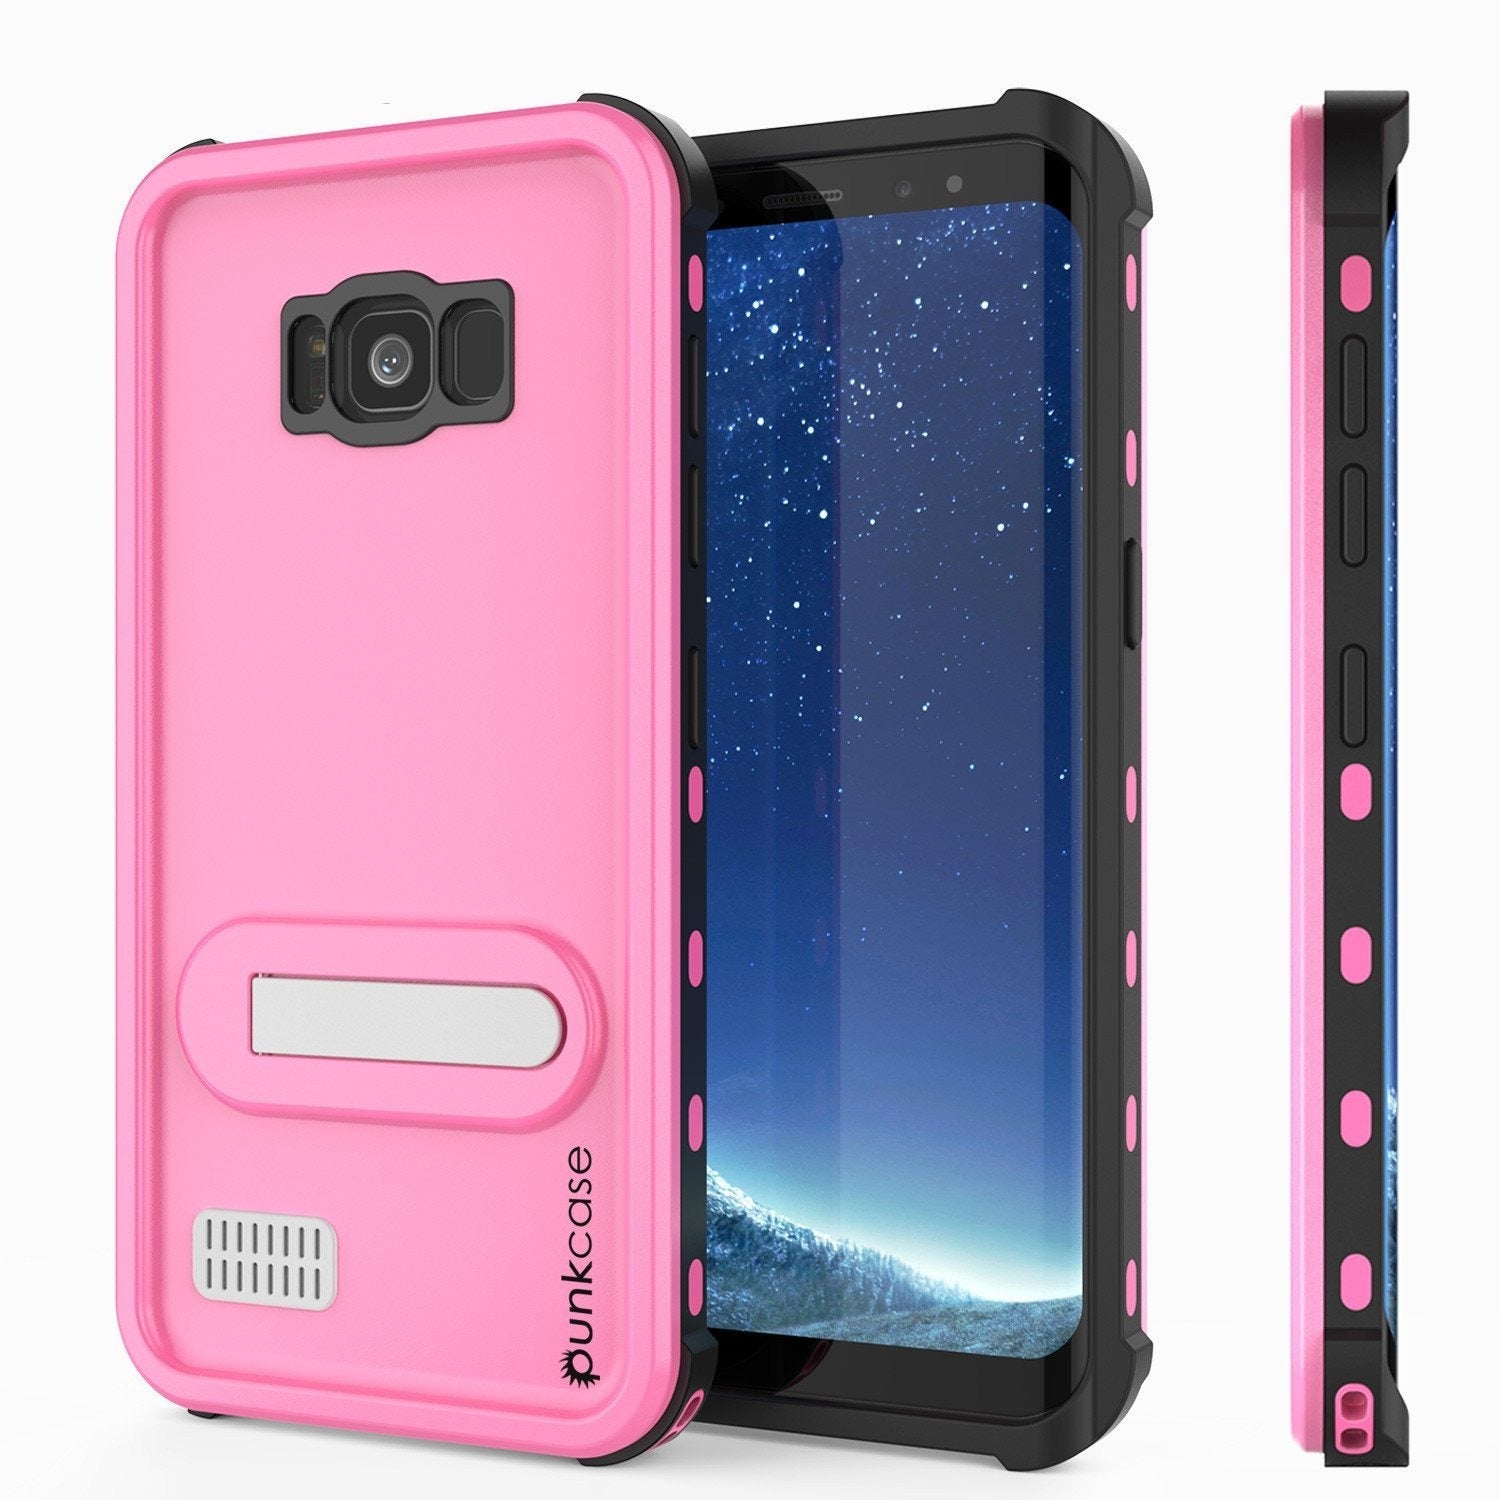 Protector [PURPLE]Galaxy S8 Waterproof Case, Punkcase [KickStud Series] [Slim Fit] [IP68 Certified] [Shockproof] [Snowproof] Armor Cover [Pink] - PunkCase NZ